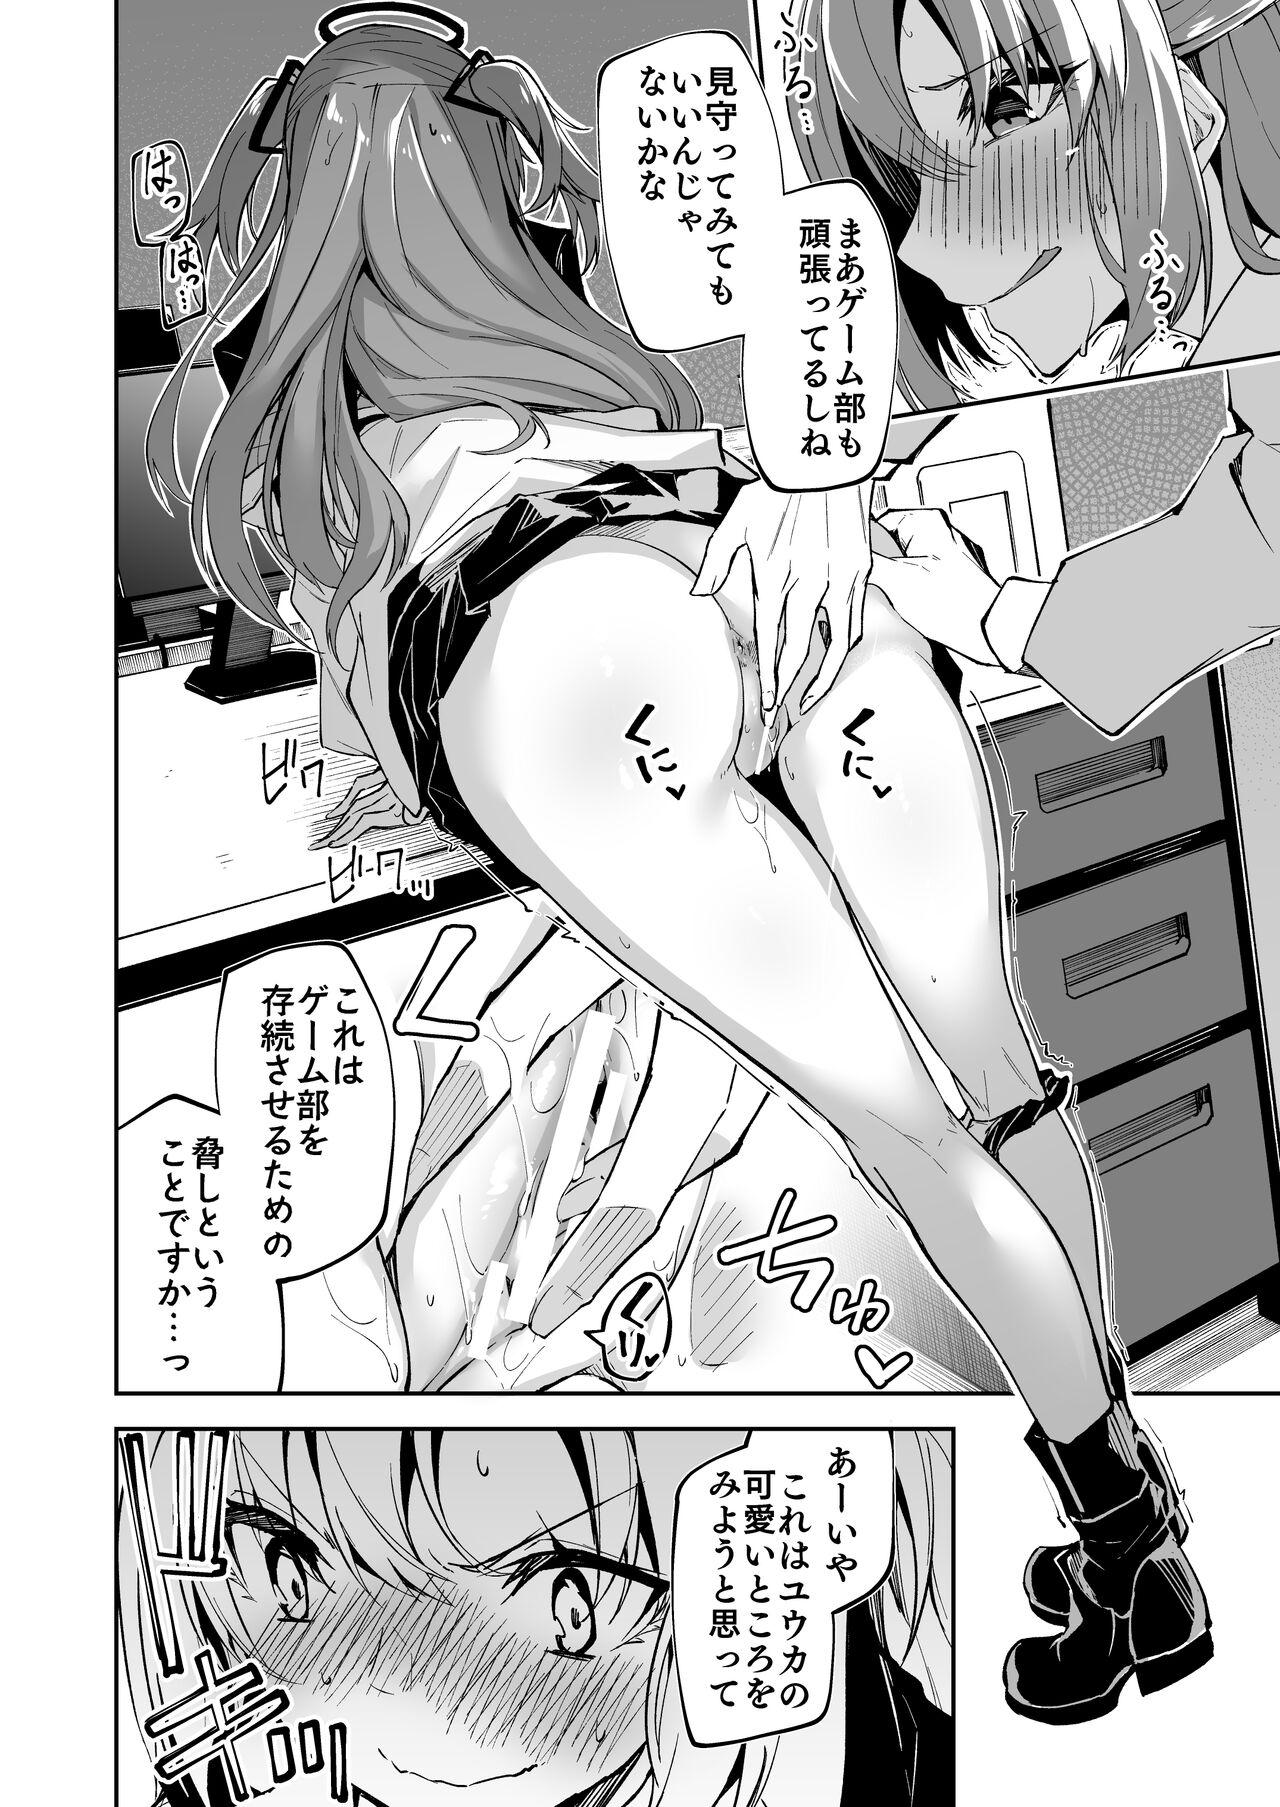 Climax BluArch no Ecchi na Mini Manga Matome Hon - Blue archive Threesome - Page 6